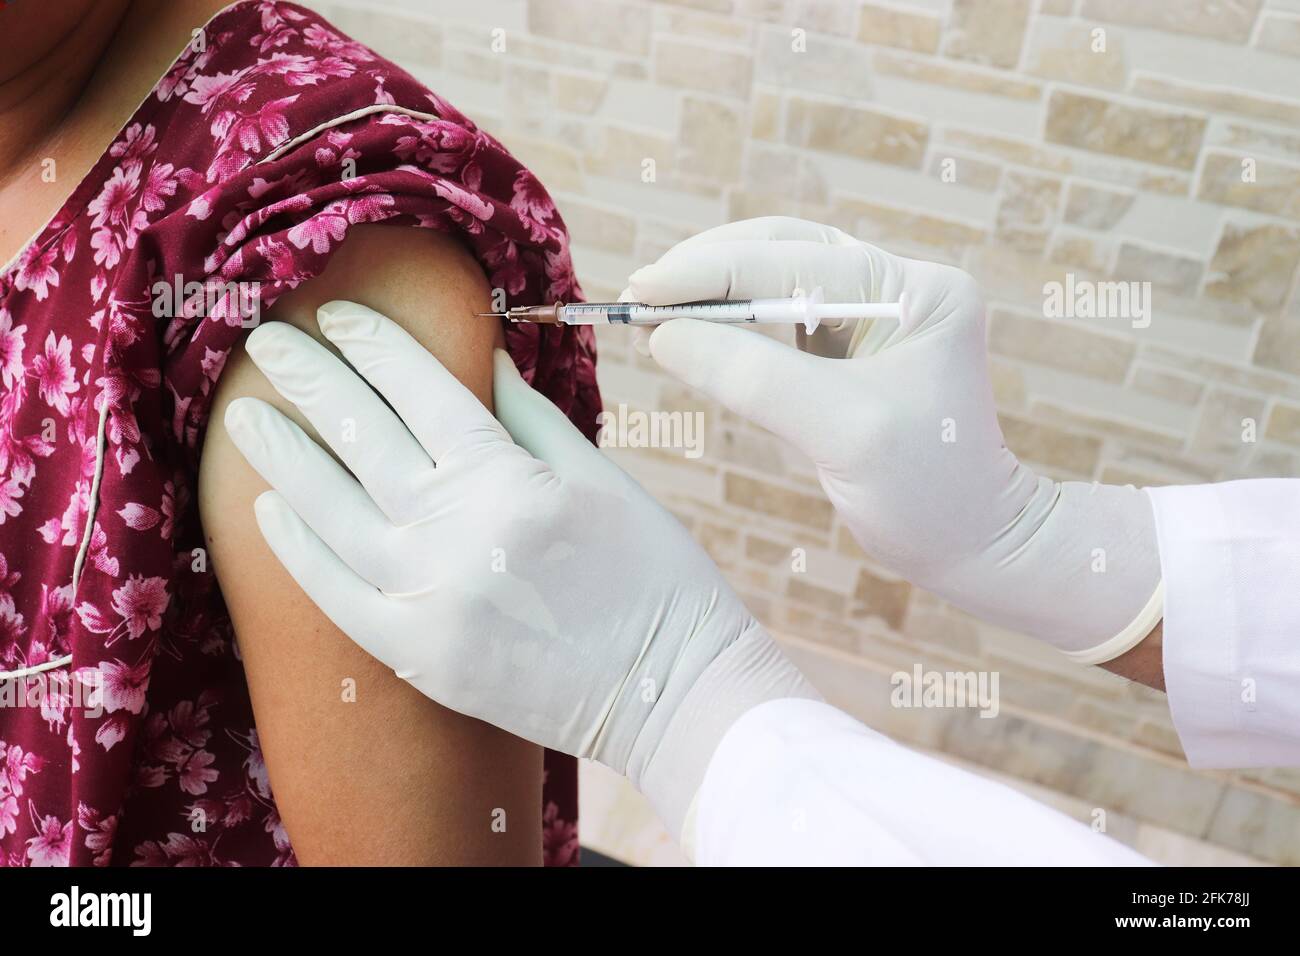 Nahaufnahme des Arztes mit einer Spritze zur Injektion eines Covid-19- oder Coronavirus-Impfstoffs an einen Patienten, COVISHIELD/COVAXIN Dose. Stockfoto